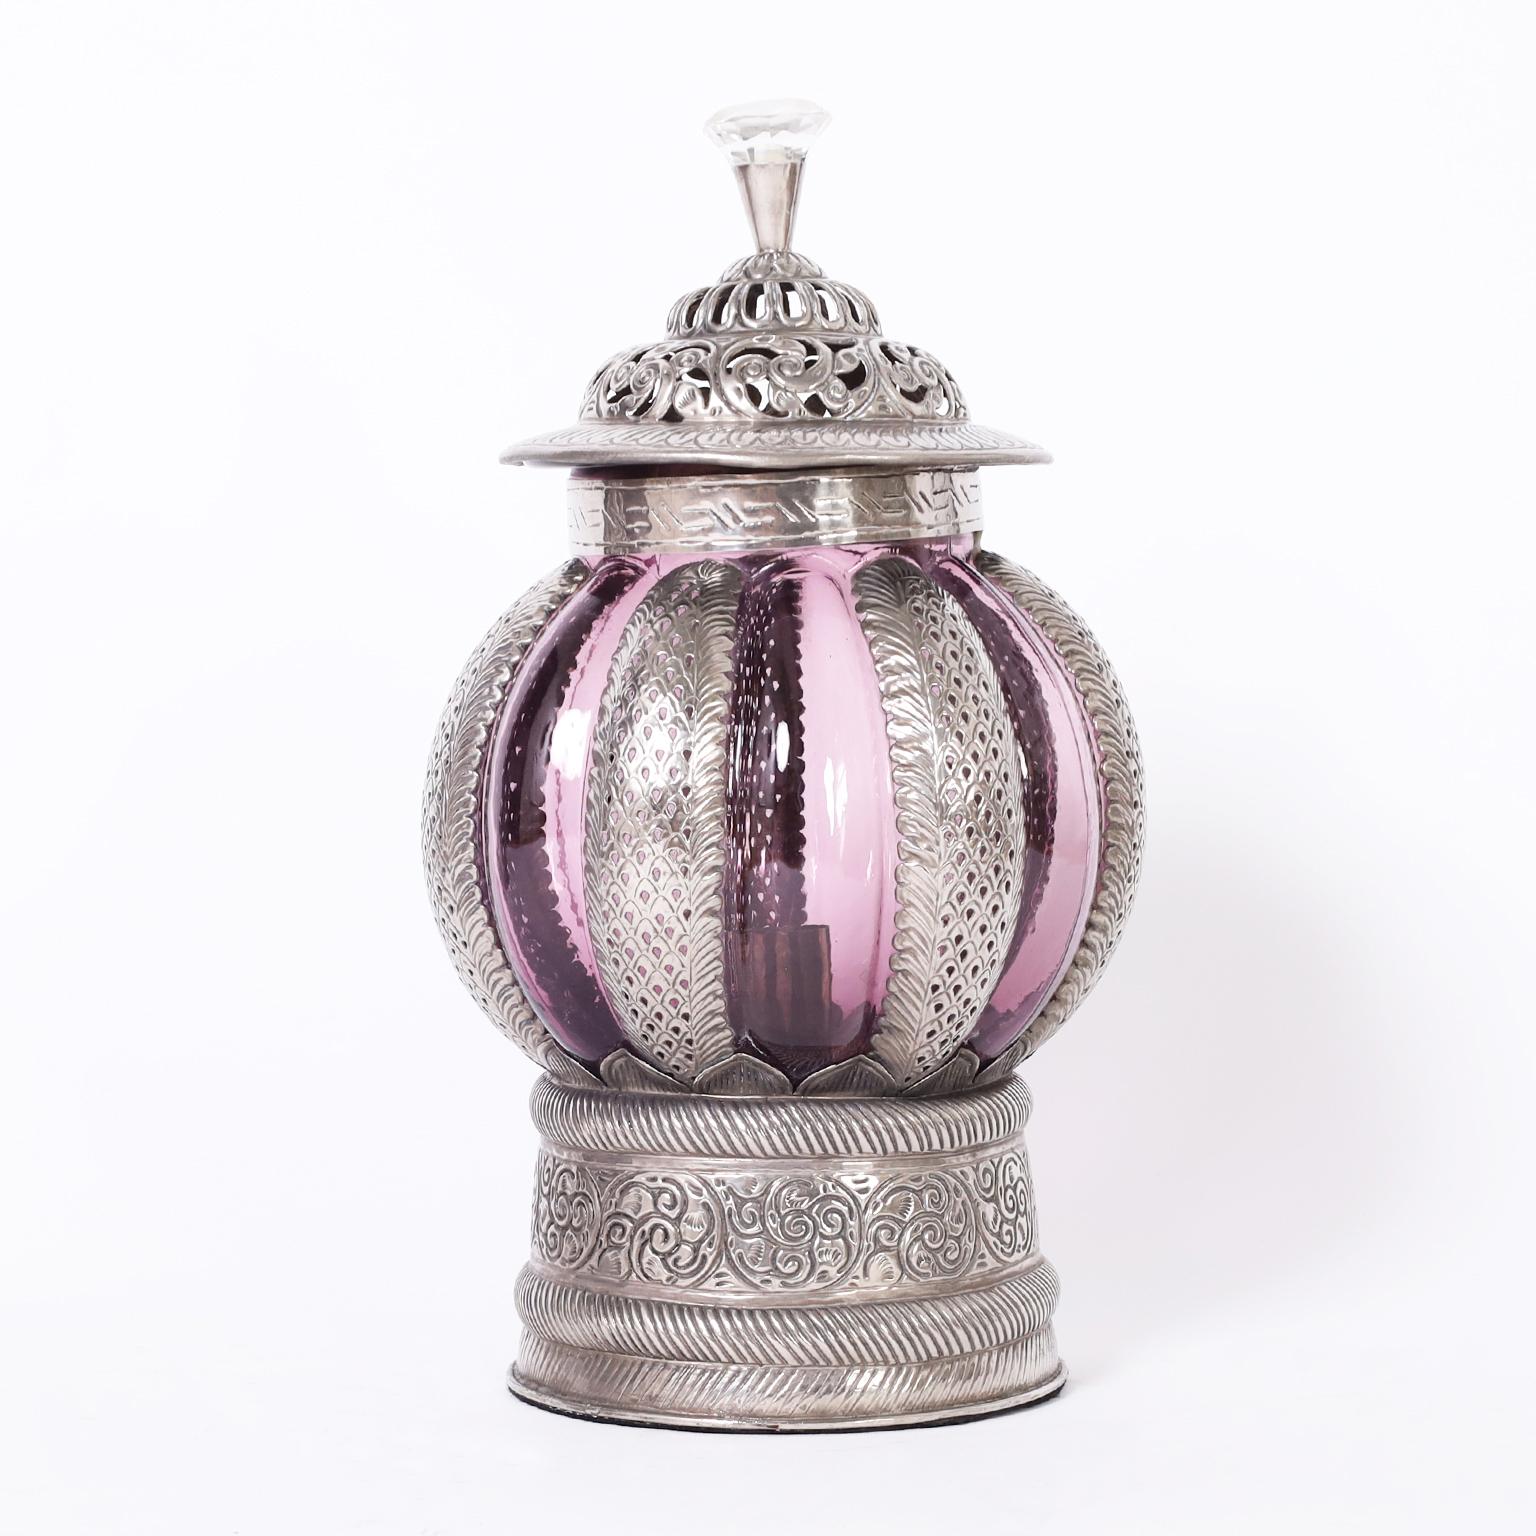 Faszinierendes Paar marokkanischer Vintage-Laternen aus handgehämmertem Metall mit floralen Motiven, Griffen aus geschliffenem Glas und verführerischen mundgeblasenen Amethyst-Glasschirmen.